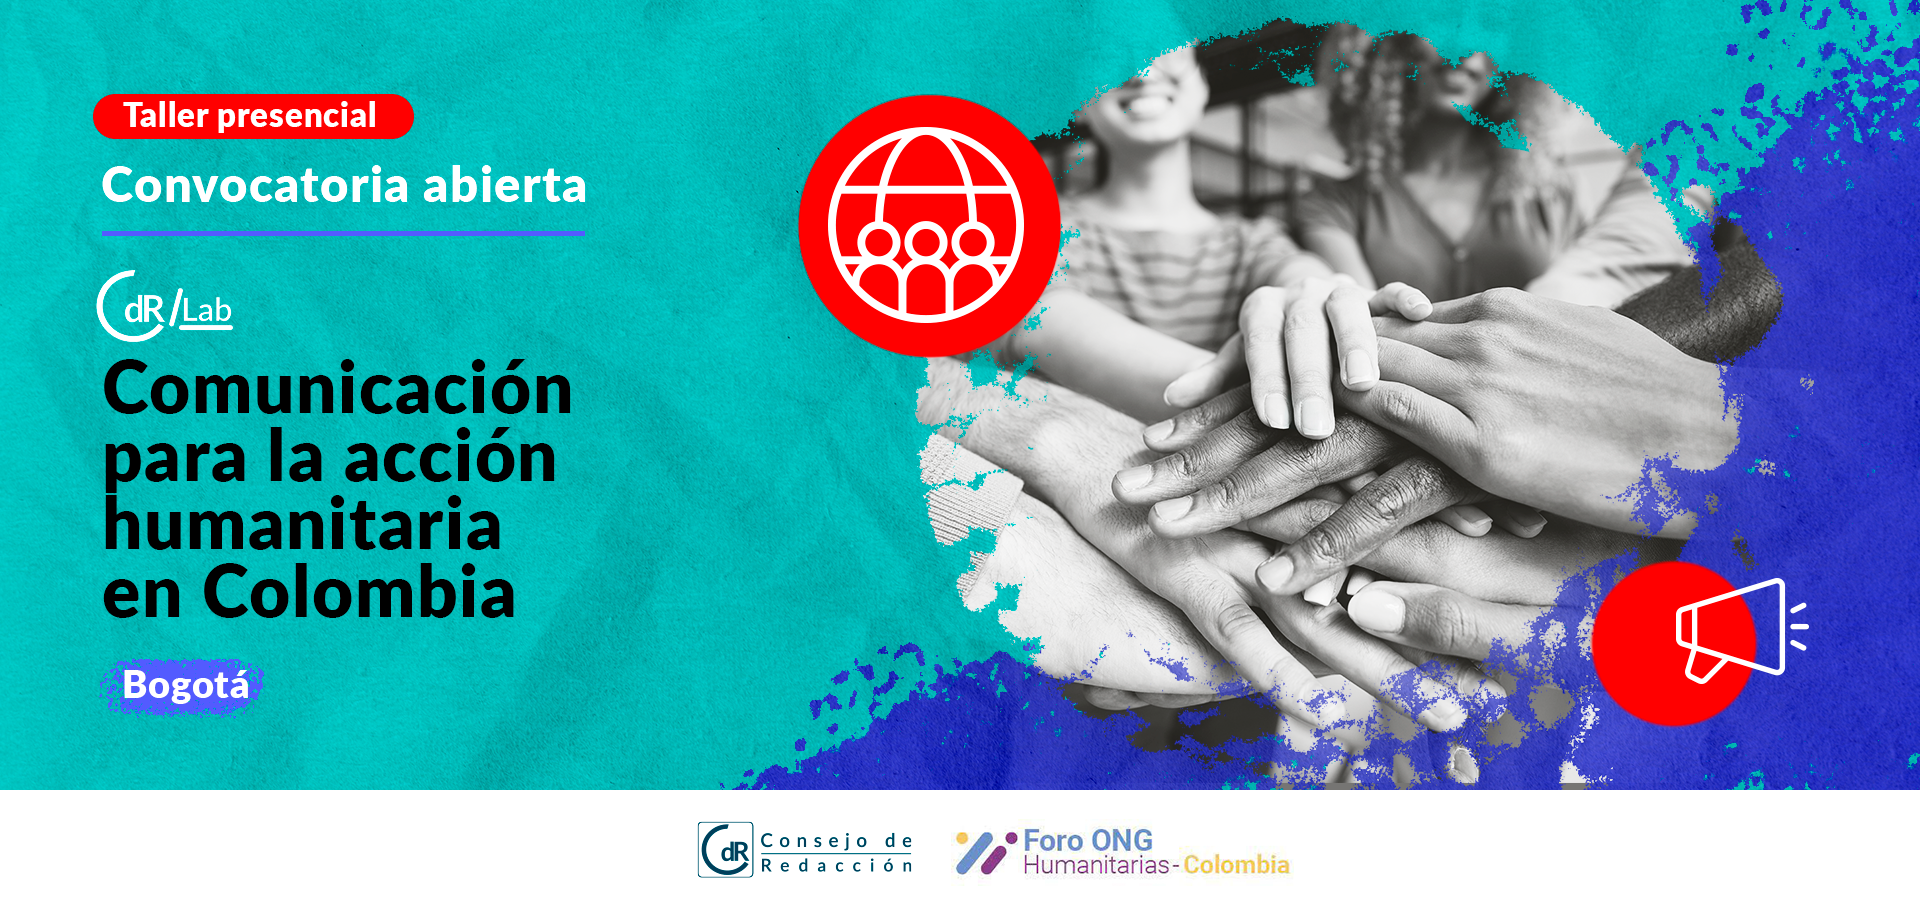 CdR/Lab Comunicación para la acción humanitaria en Colombia